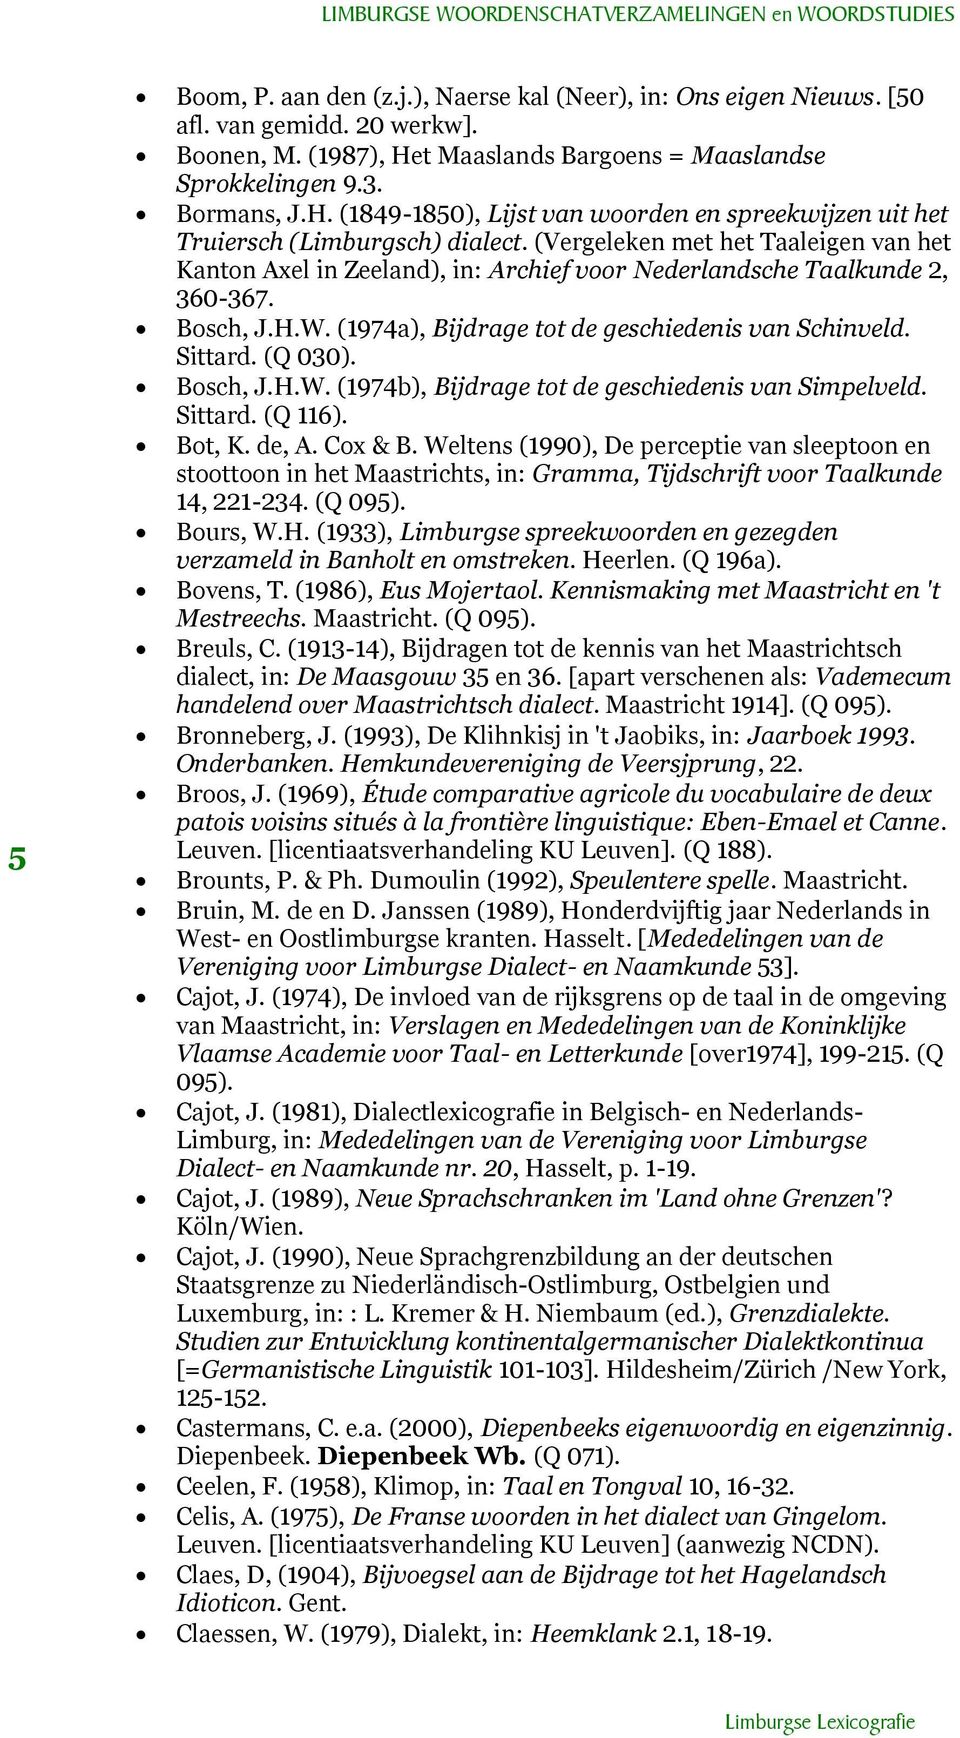 (Vergeleken met het Taaleigen van het Kanton Axel in Zeeland), in: Archief voor Nederlandsche Taalkunde 2, 360-367. Bosch, J.H.W. (1974a), Bijdrage tot de geschiedenis van Schinveld. Sittard. (Q 030).